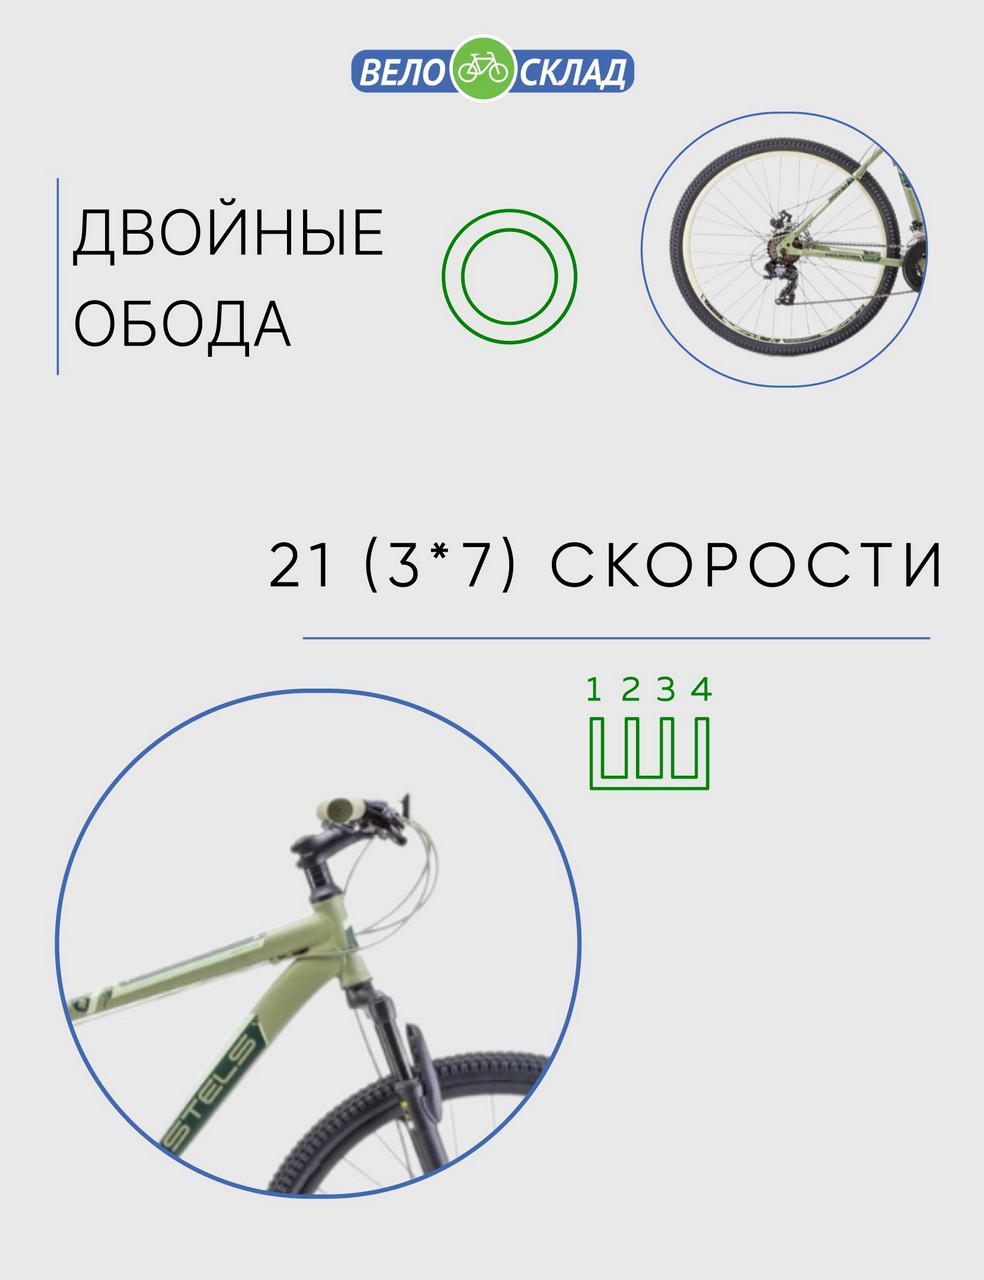 Горный велосипед Stels Navigator 900 MD 29 F020, год 2023, цвет Зеленый, ростовка 17.5